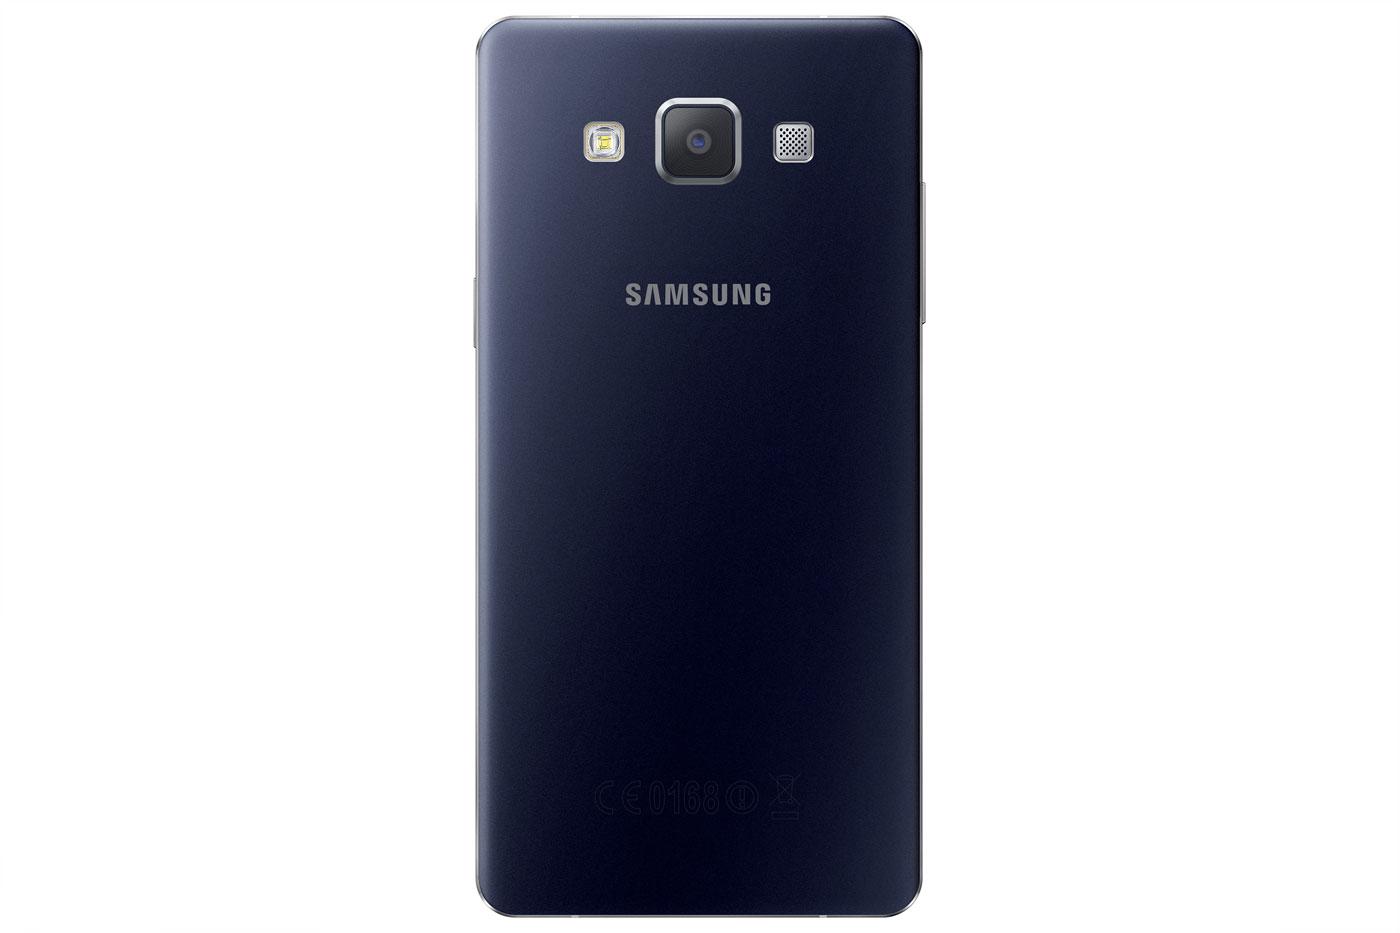 Samsung Galaxy A5 en color negro vista trasera y detalle de la cámara